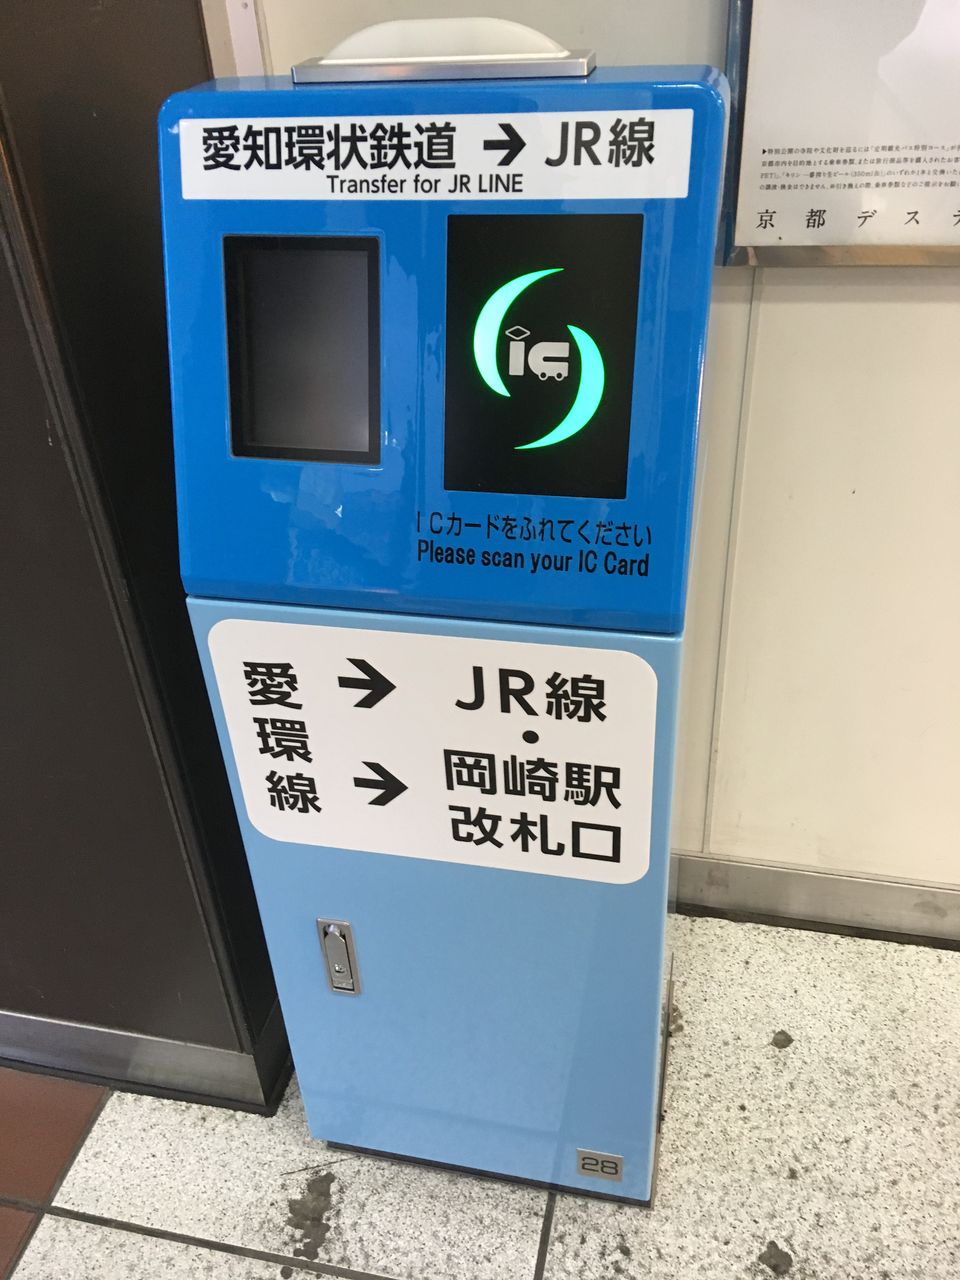 番外編 Icカードで岡崎駅のjr 愛環への乗り換えについて 駅務機器調査ブログ